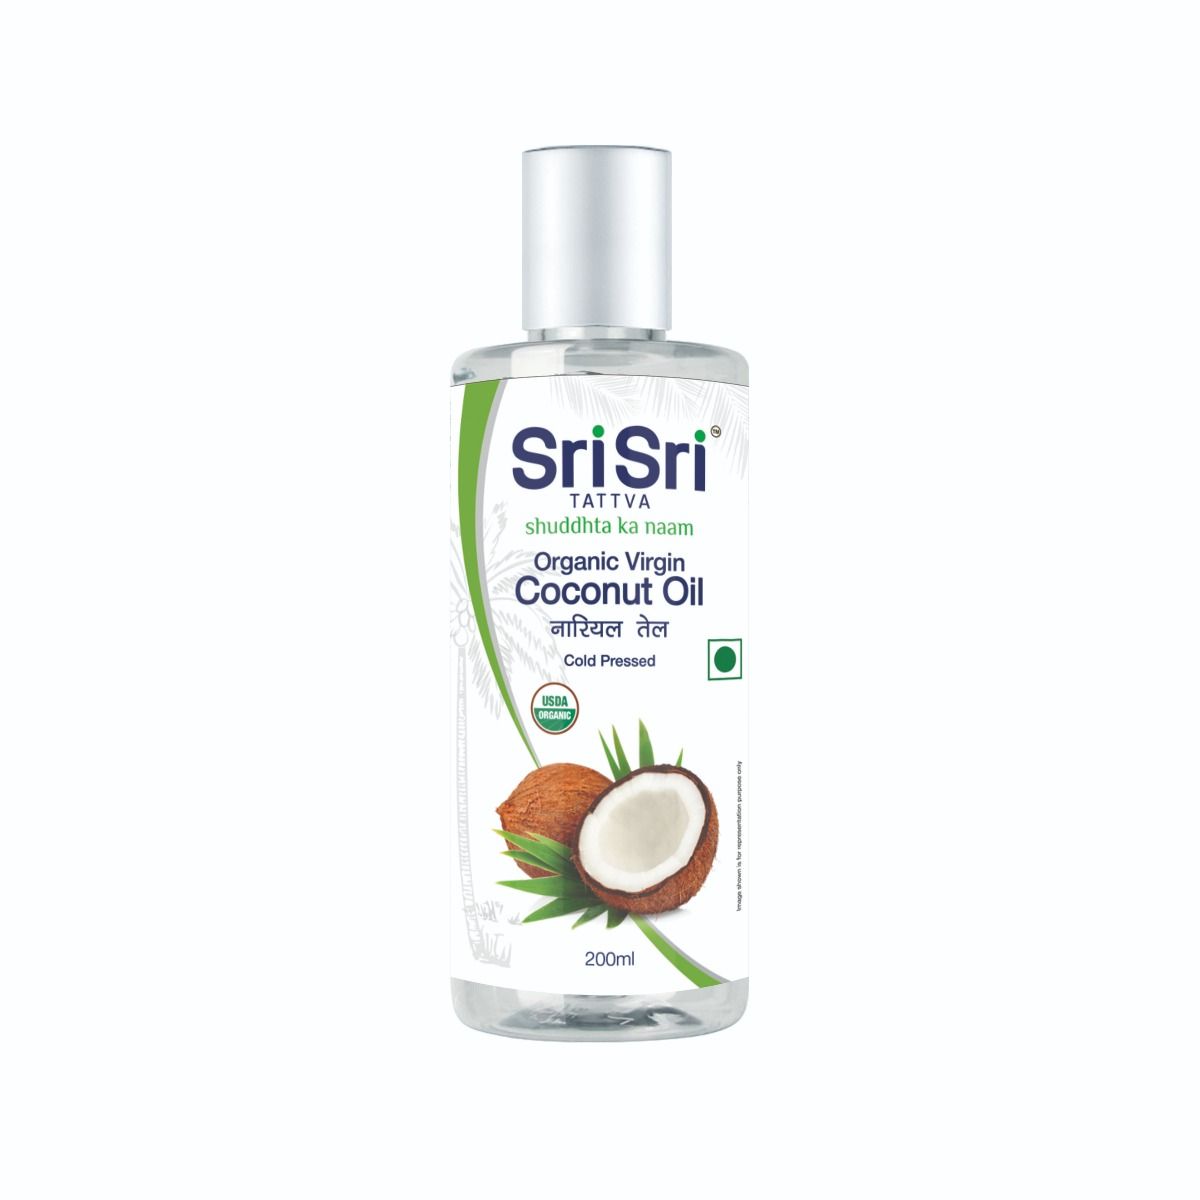 Sri Sri Tattva Organic Virgin Coconut Oil, 200 ml, Pack of 1 